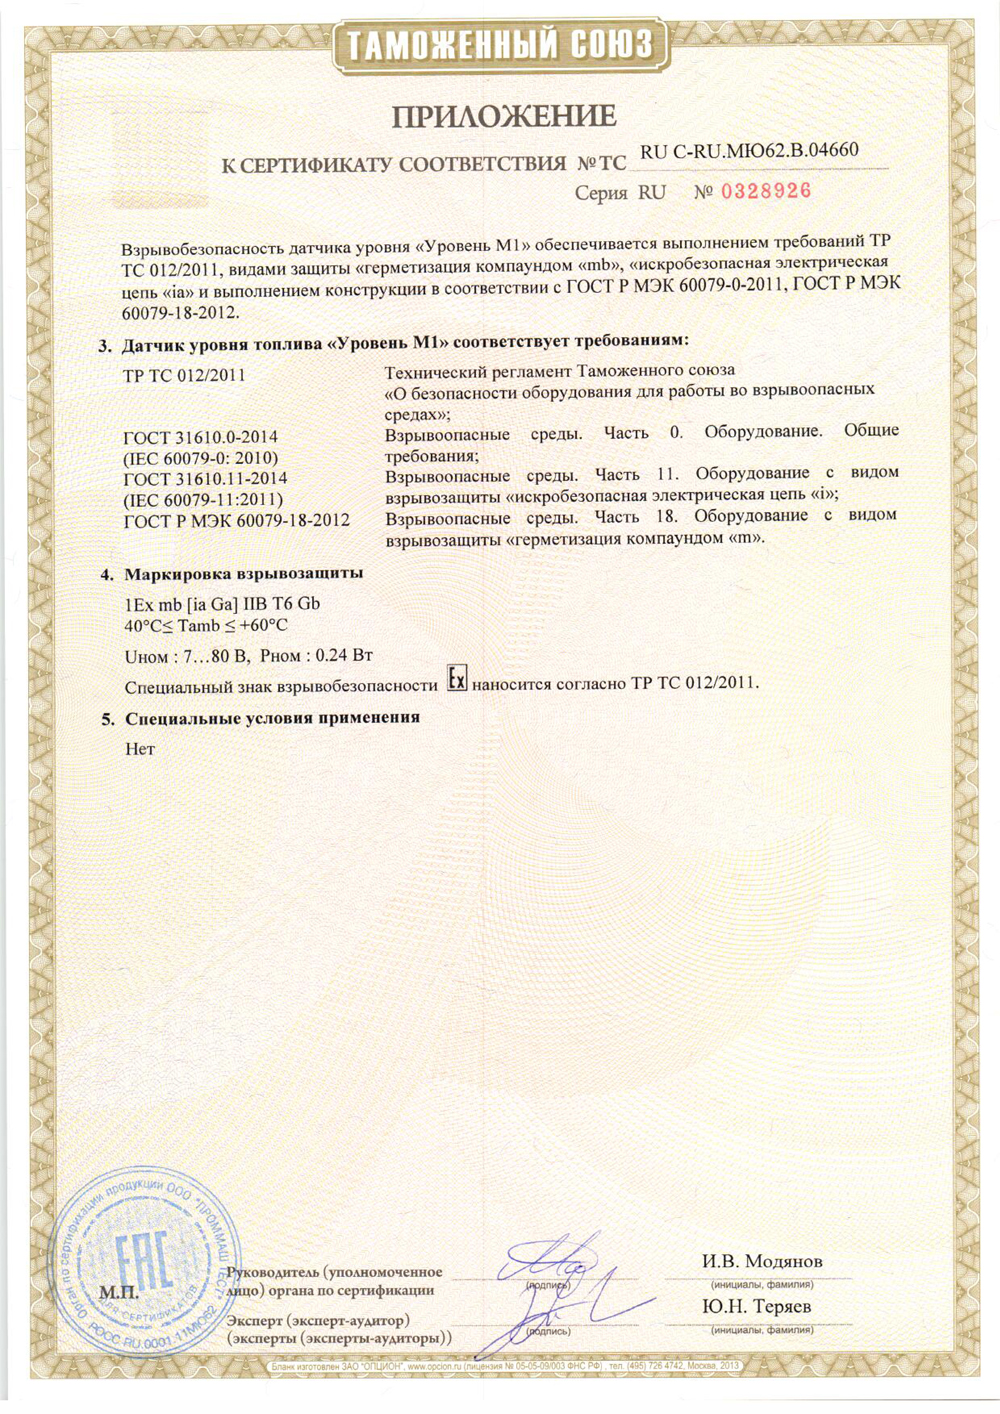 Сертификат соответствия ДУТ требованиям Технического регламента Таможенного союза ТР ТС 012/2011